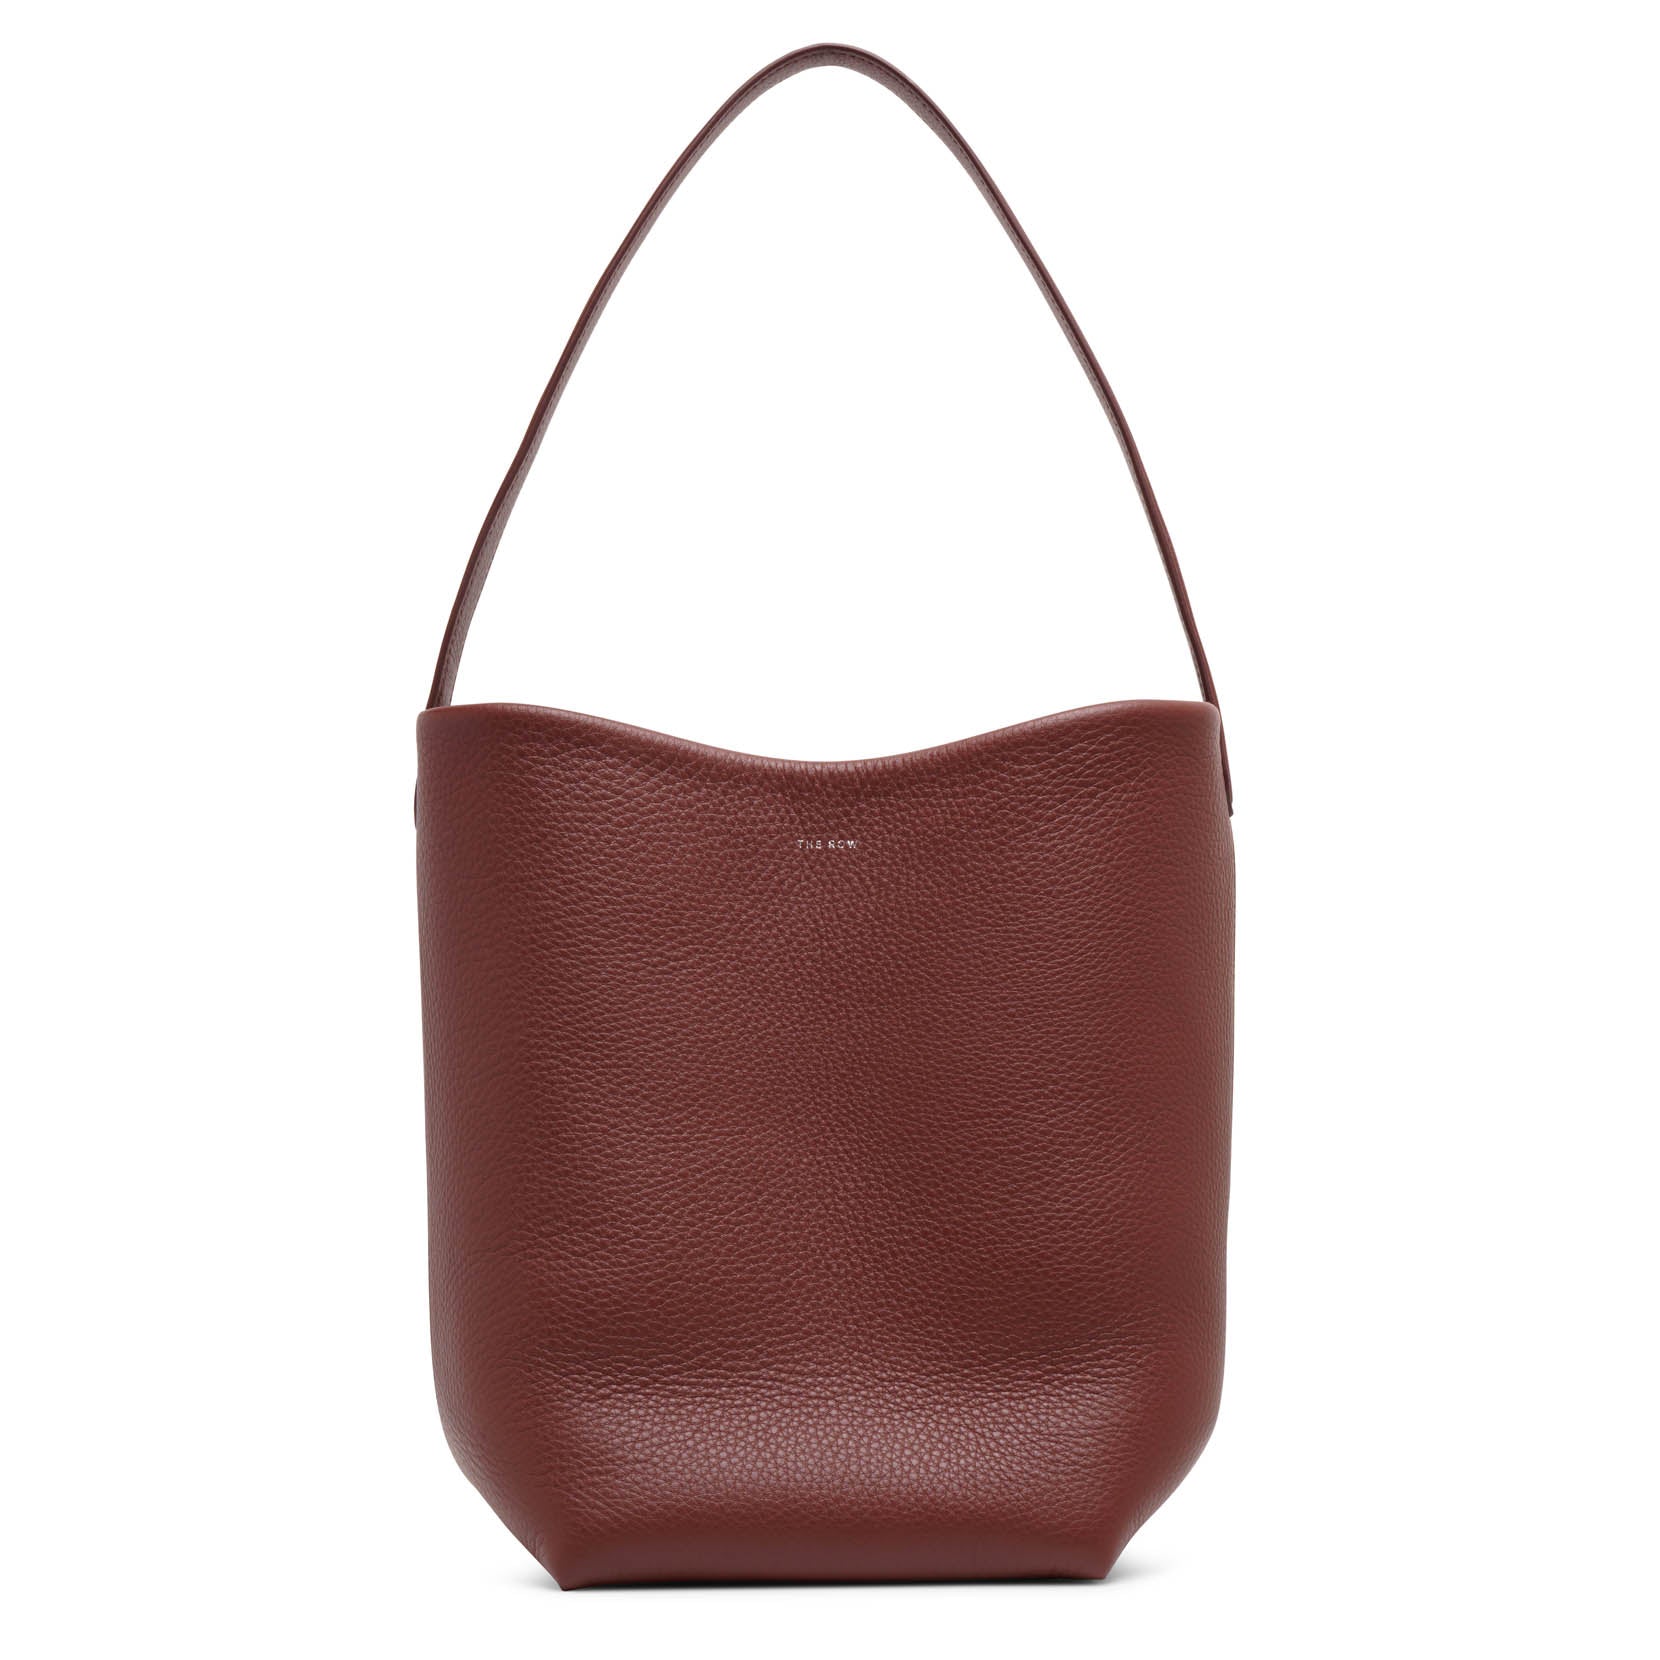 The Row Medium N/S dark brown tote bag - brown - one size